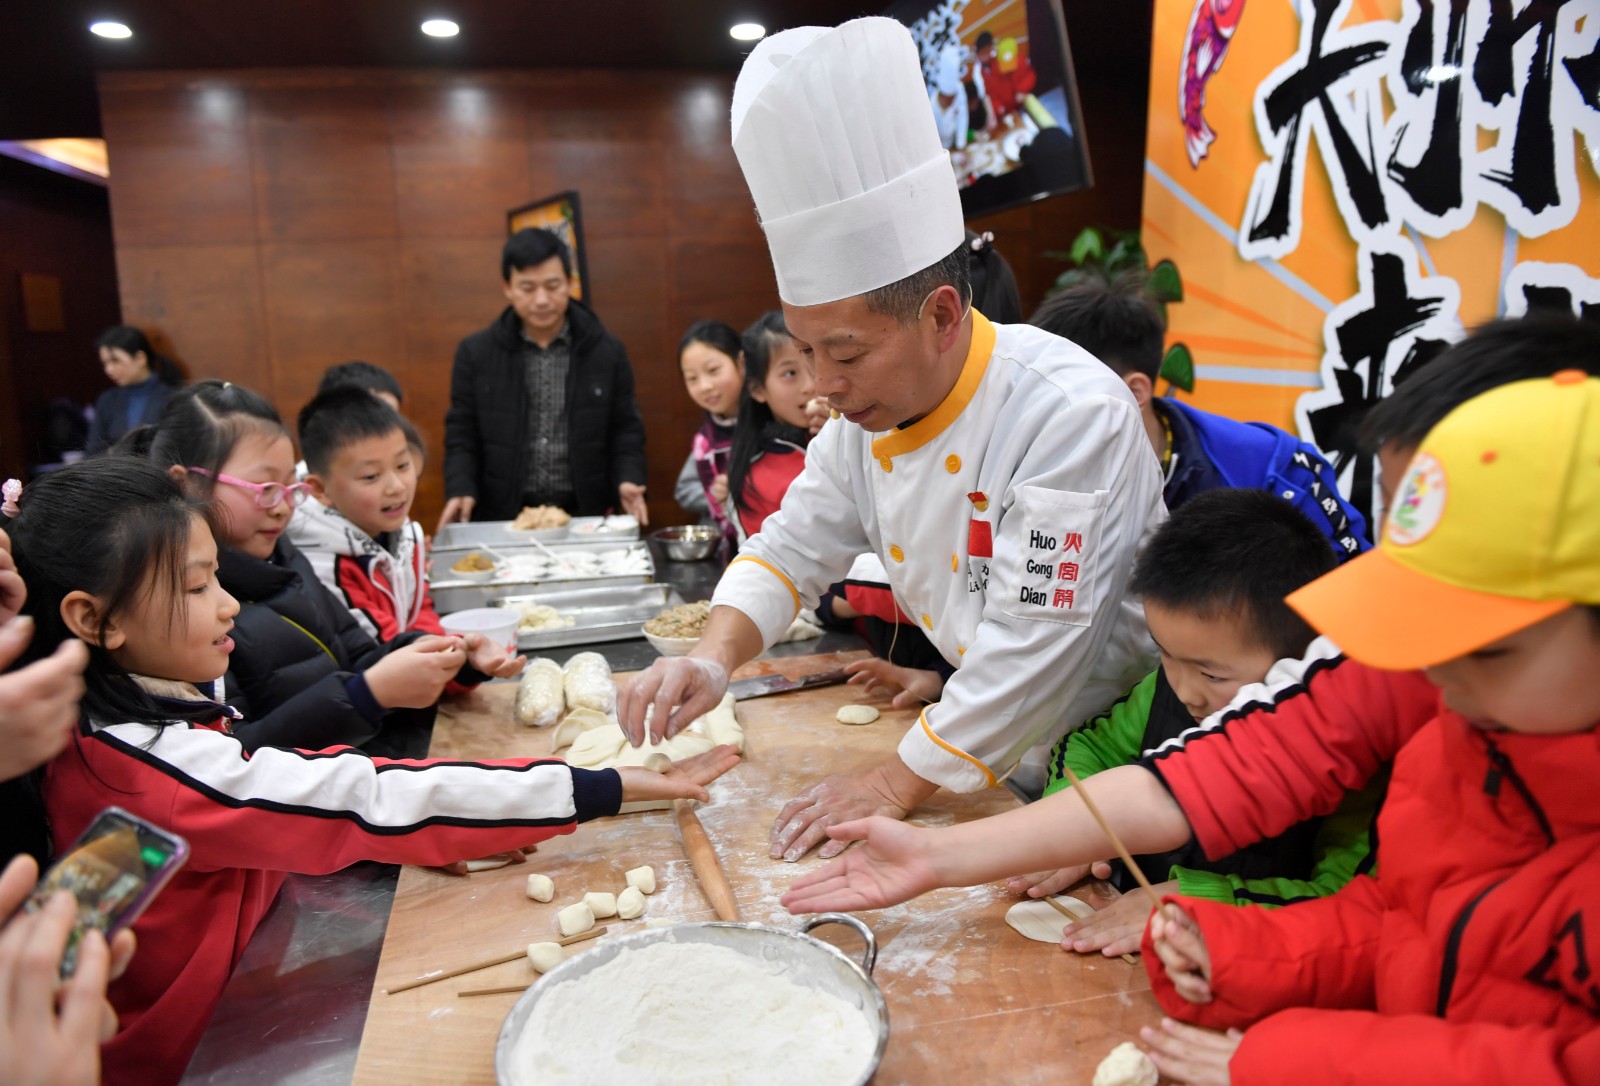 火宫殿湘点大师马力正在教学生们做饺子。图片均为长沙晚报全媒体记者 邹麟 摄